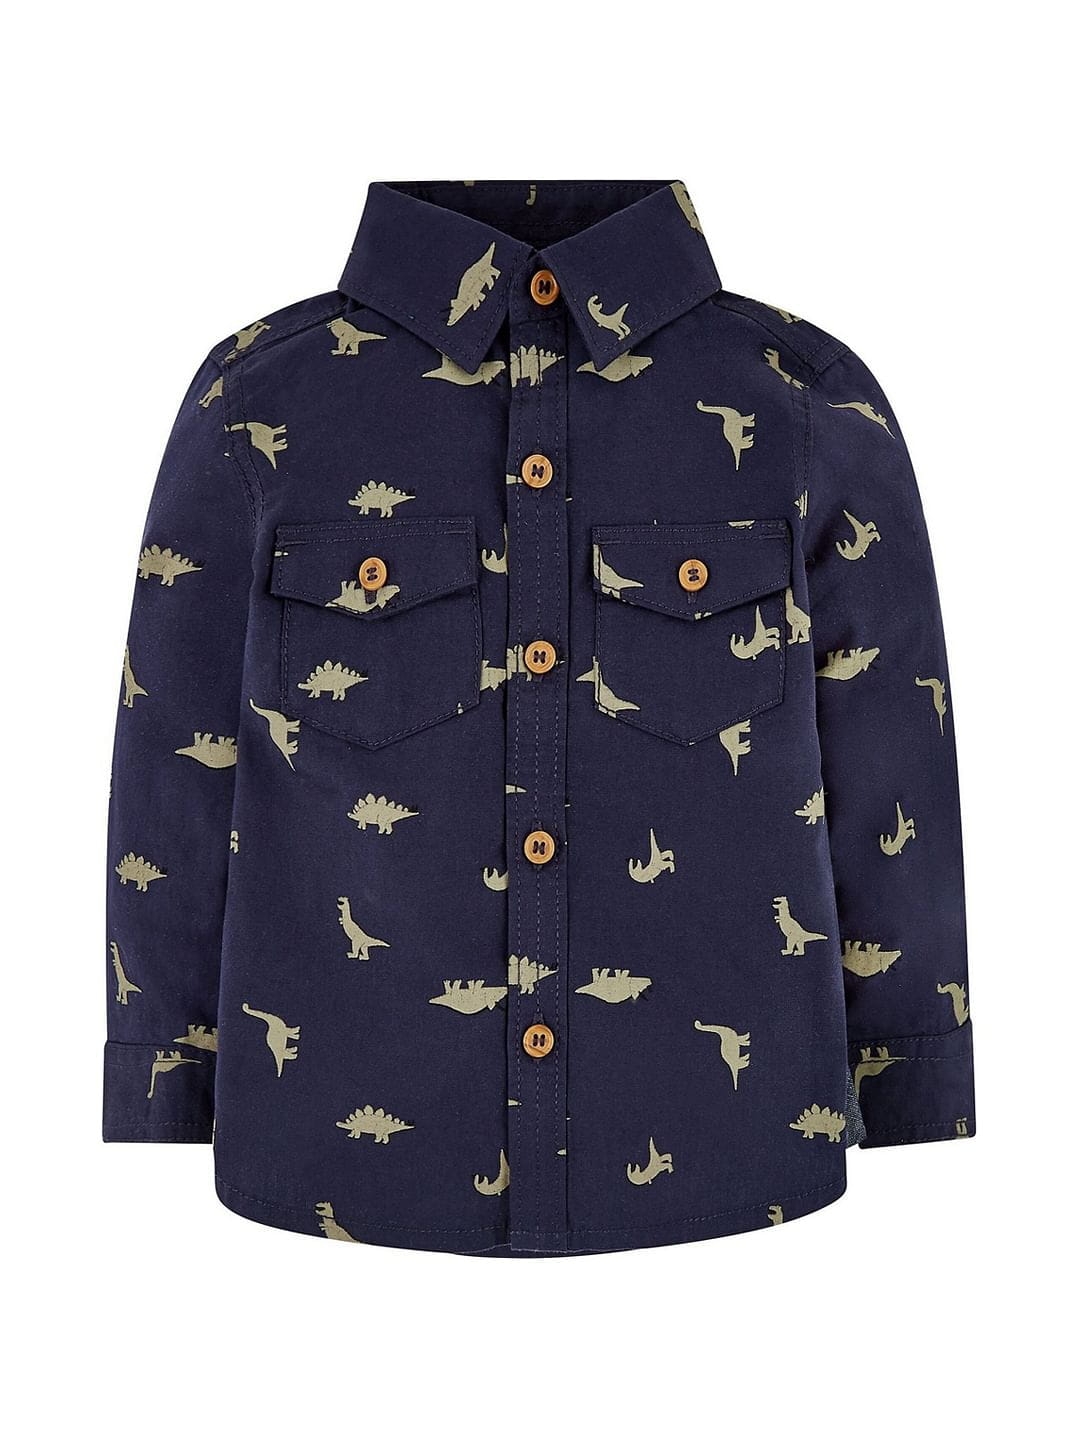 Navy Dinosaur Shirt